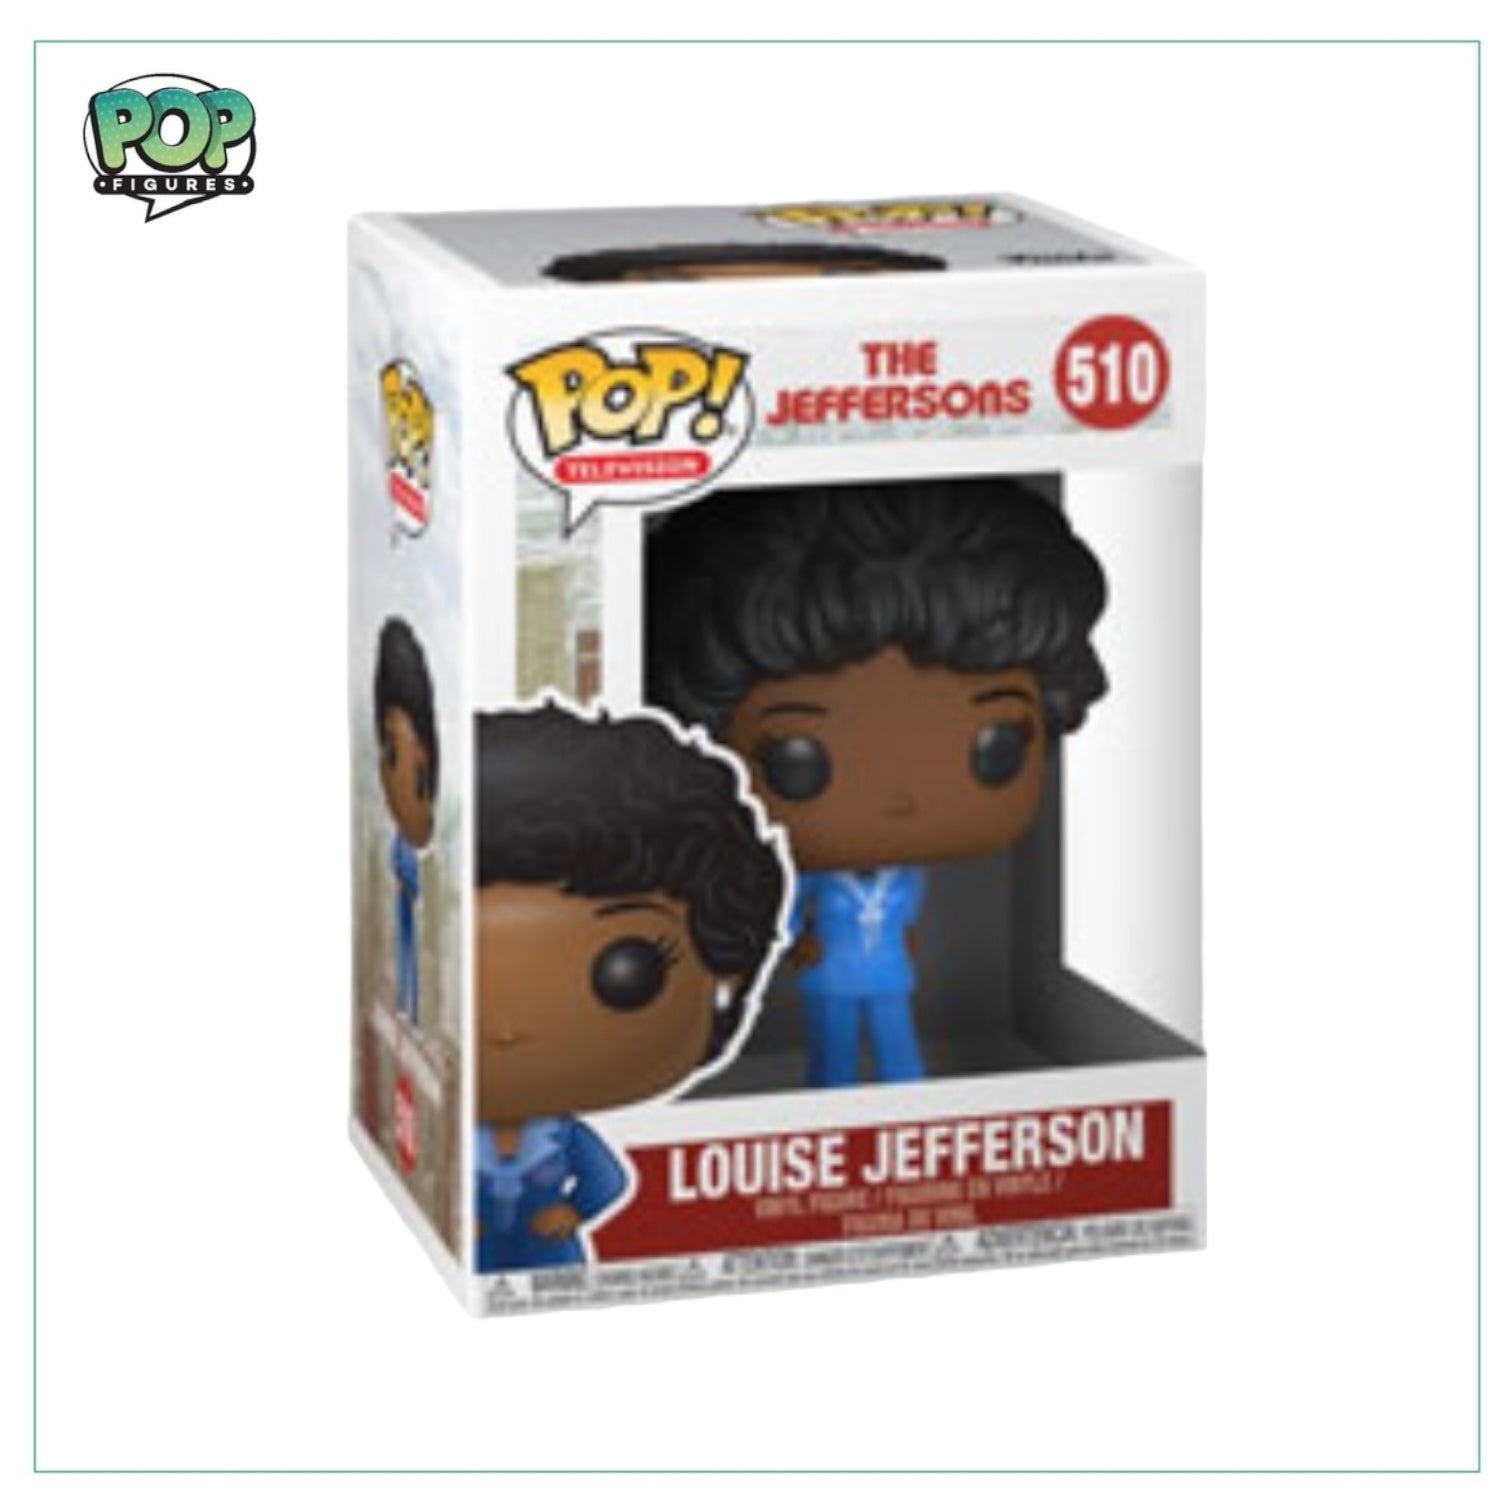 Louise Jefferson #510 Funko Pop! - The Jeffersons